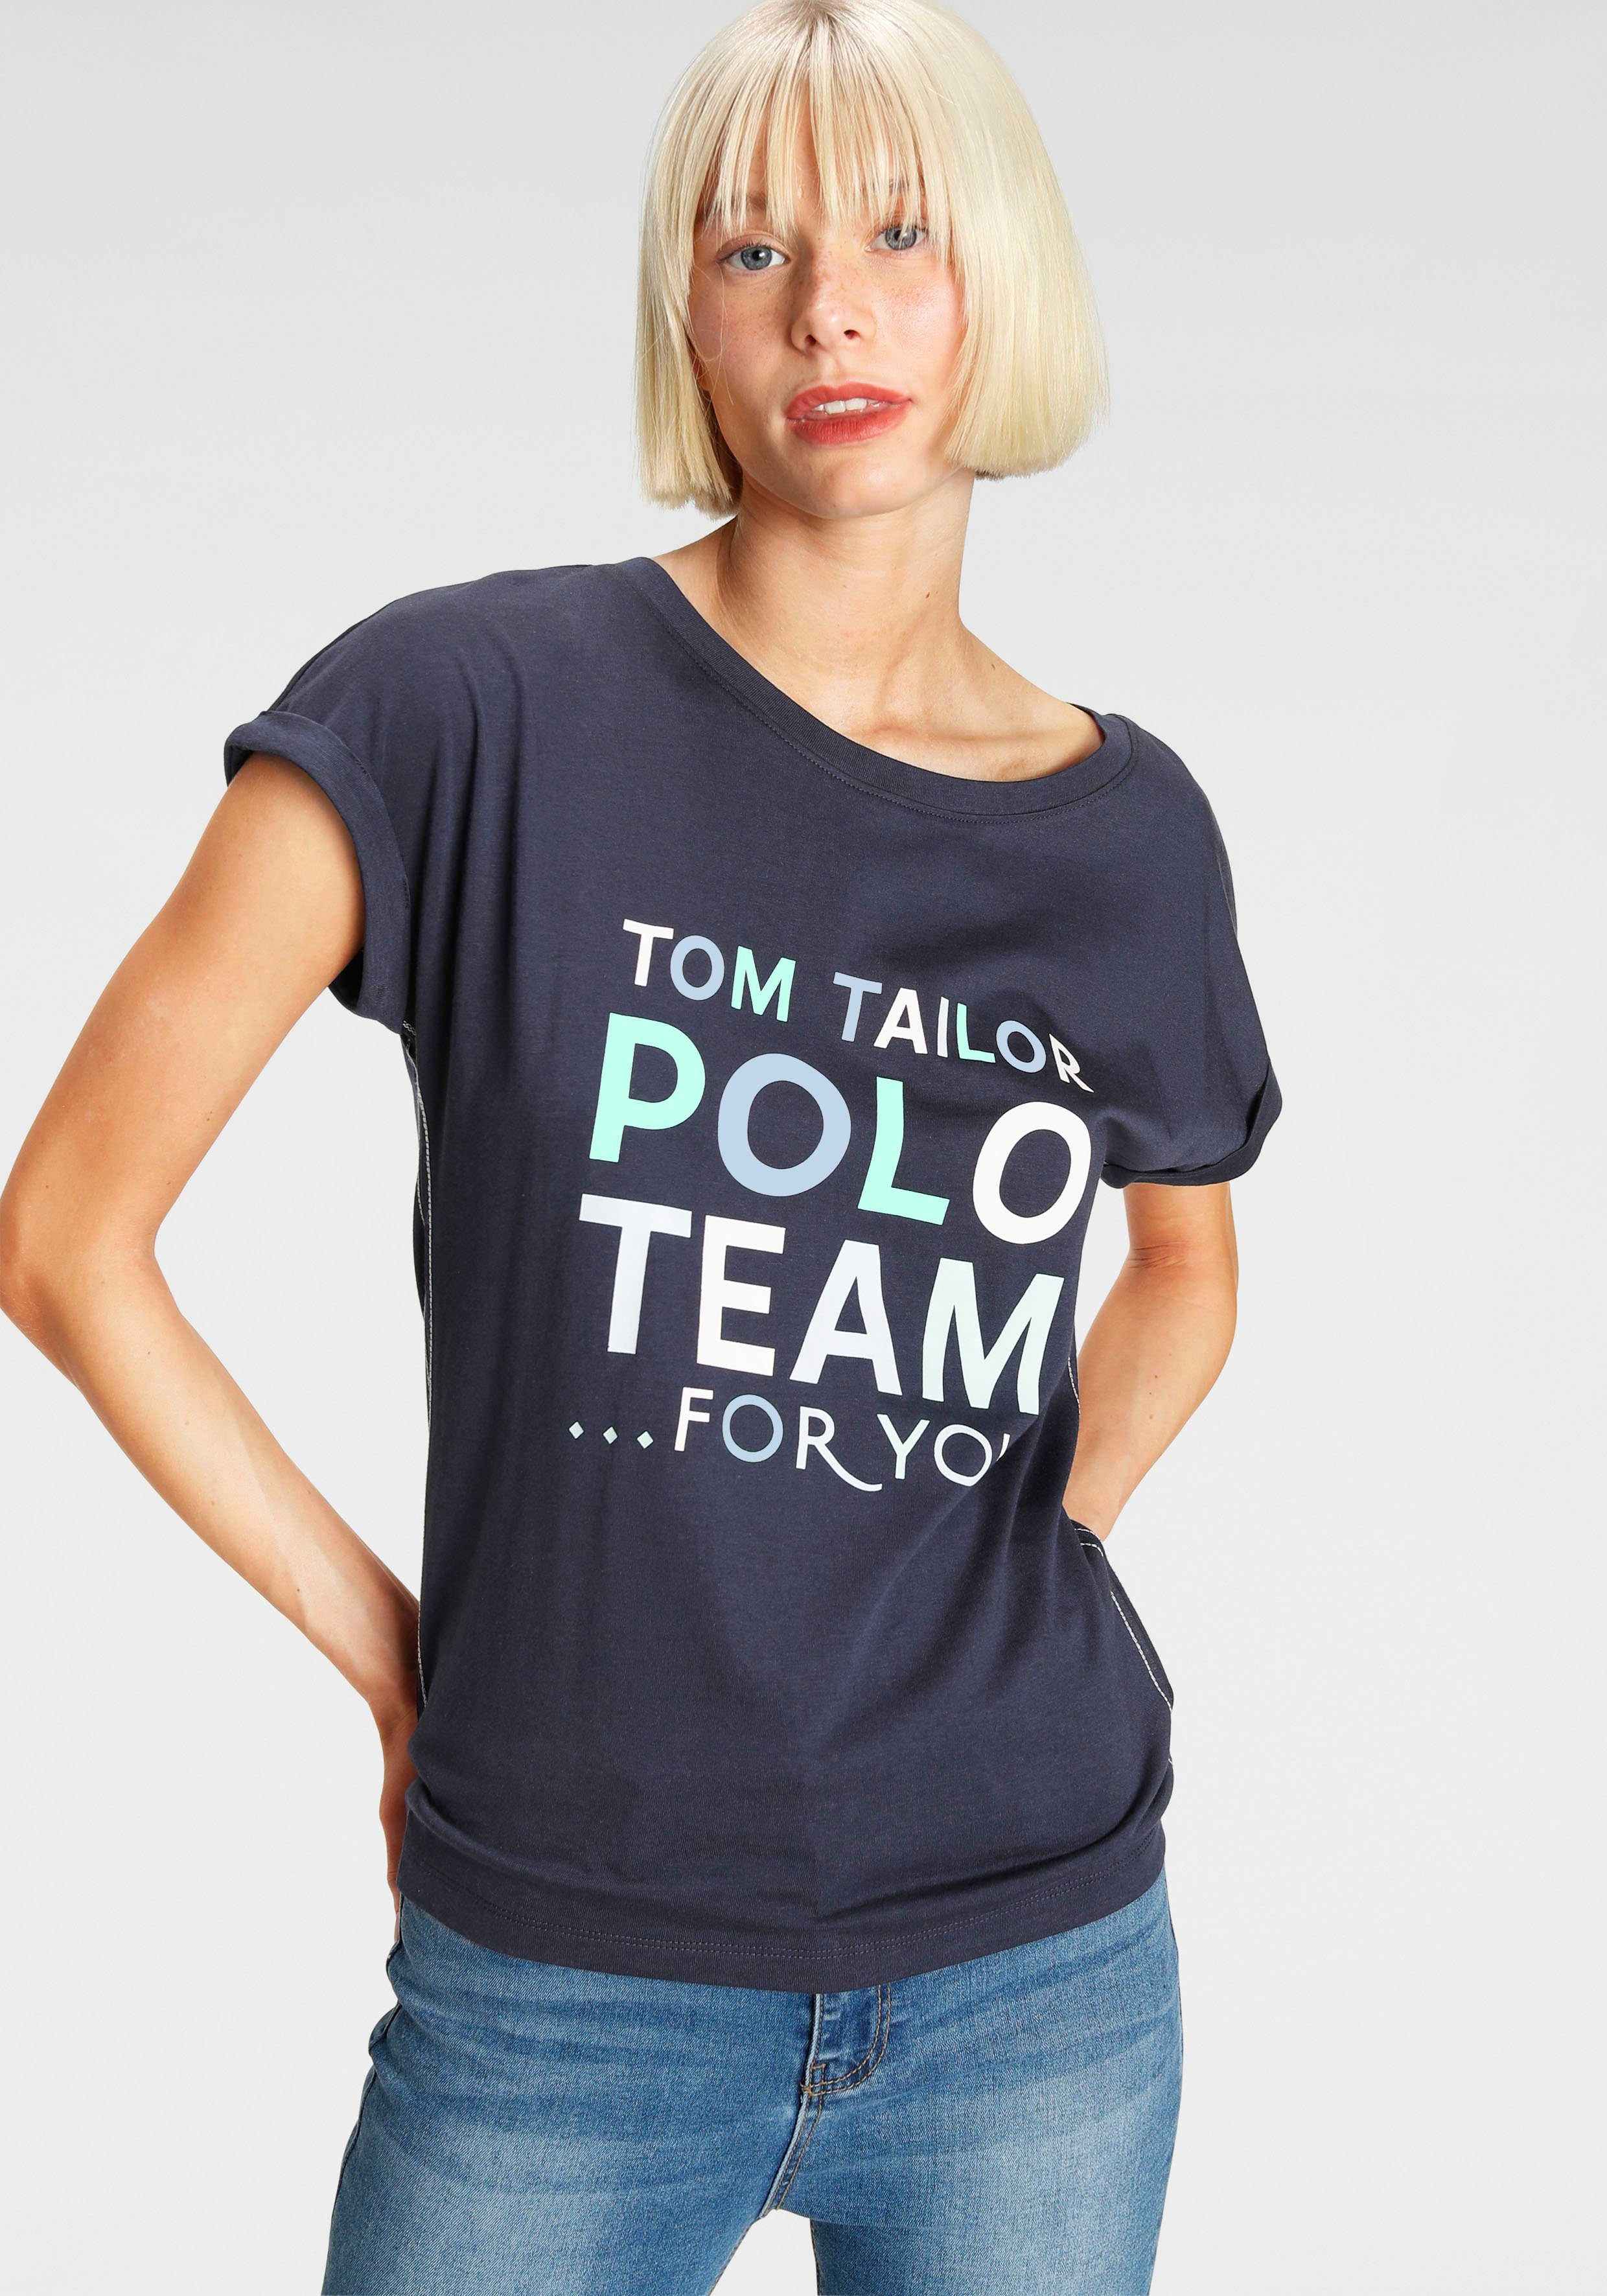 TOM TAILOR farbenfrohen Team Polo Logo-Print großem Print-Shirt